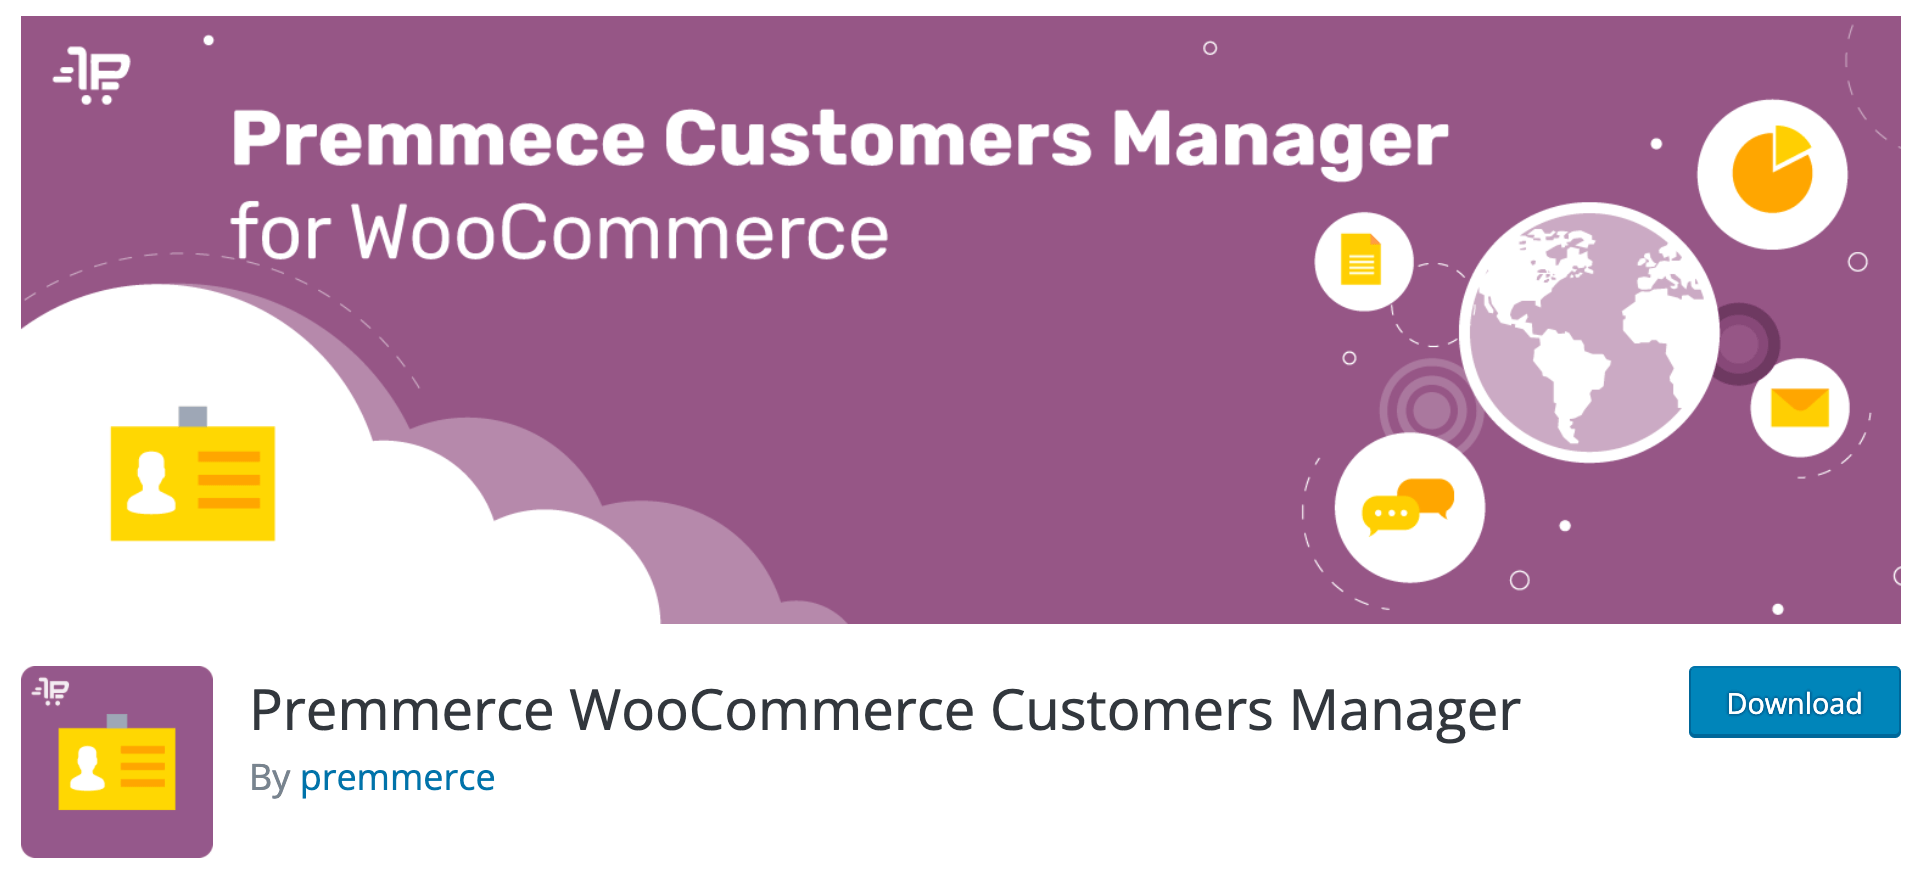 Premmerce WooCommerce Customers Manager